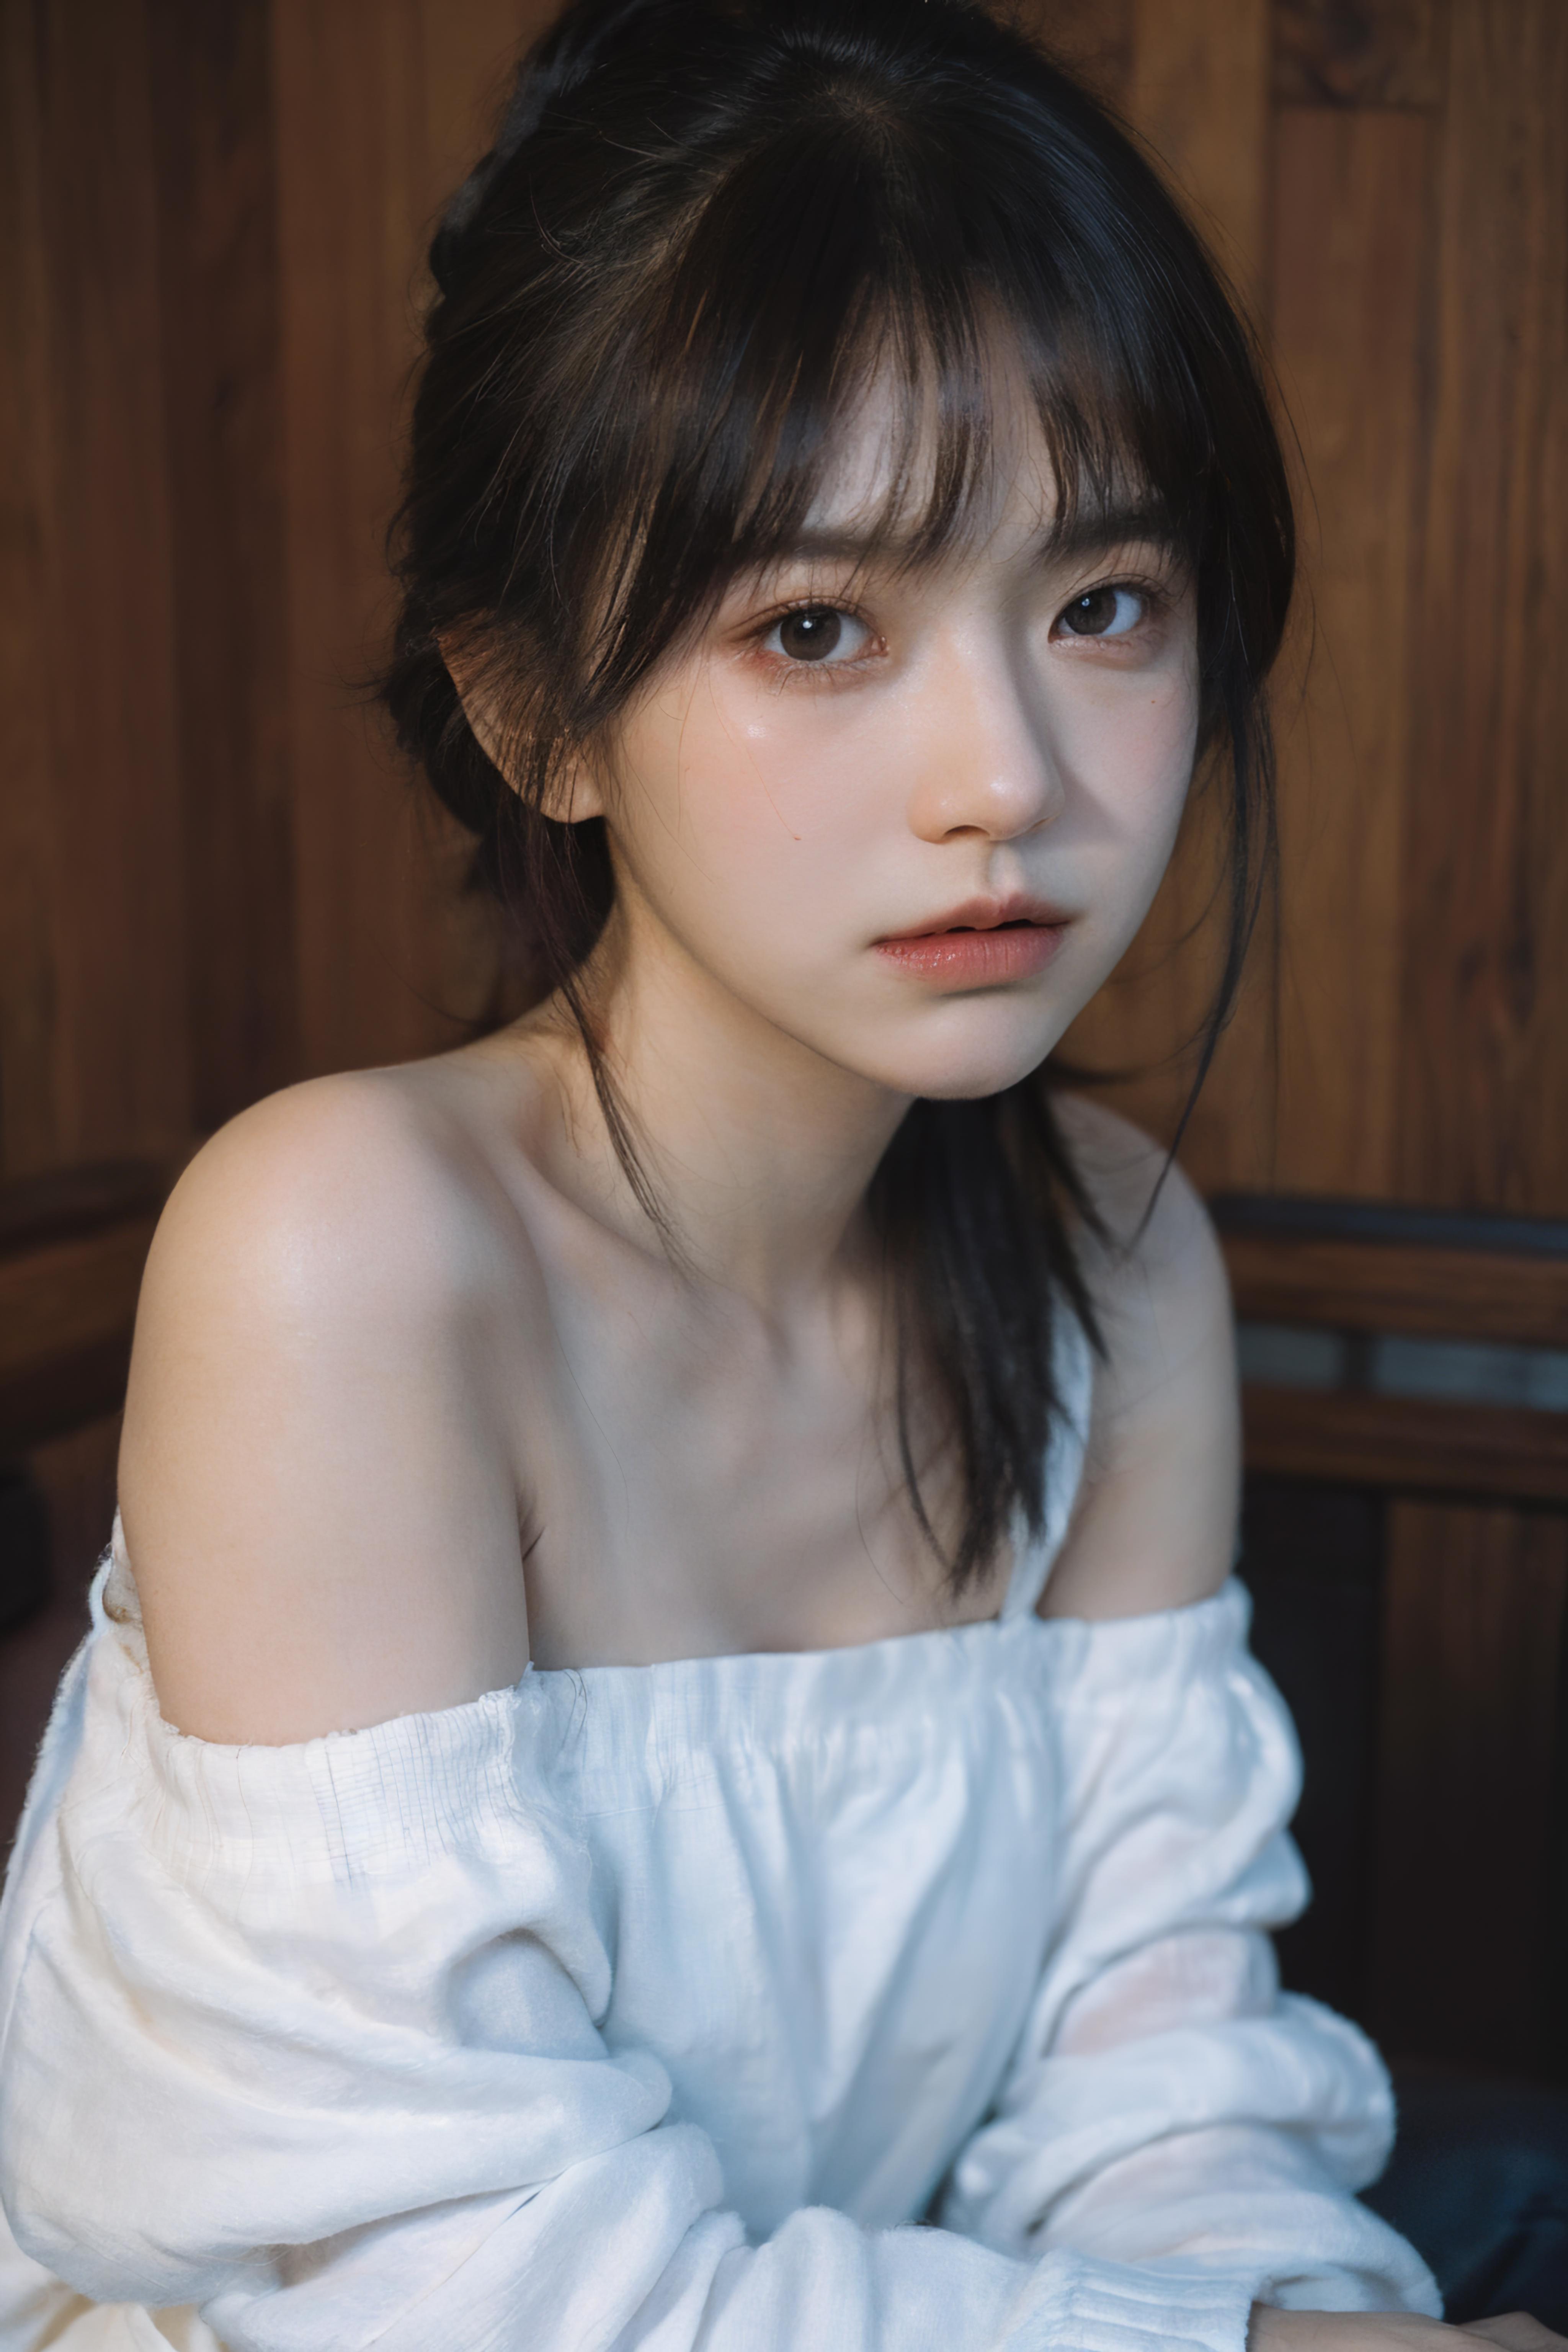 Asian girls face image by CNvtuber